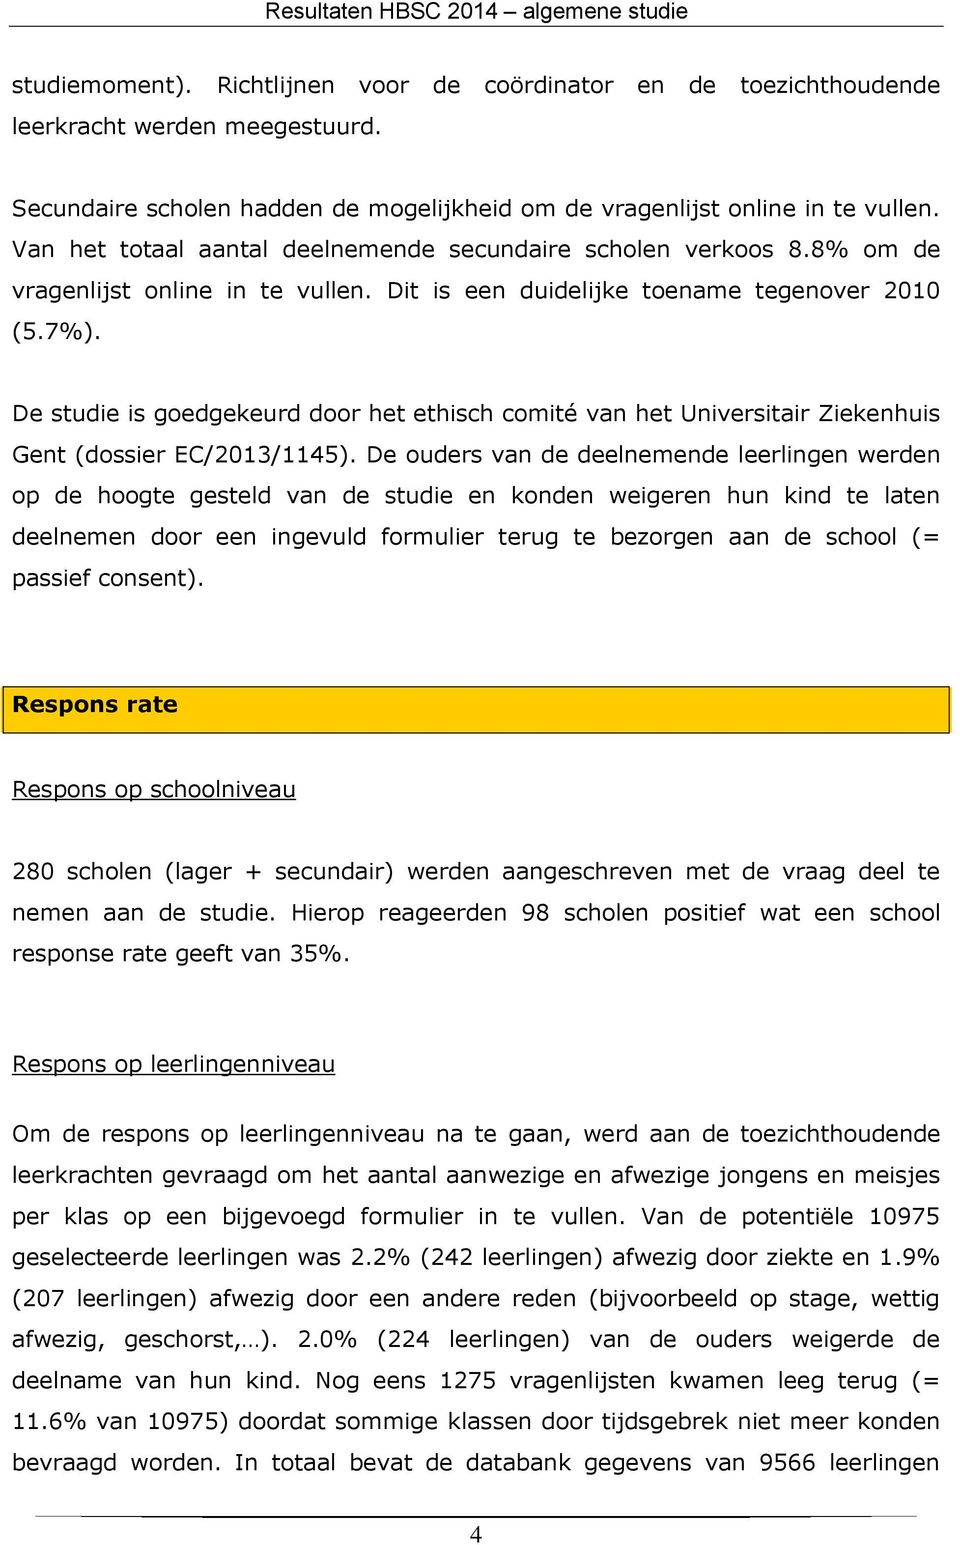 De studie is goedgekeurd door het ethisch comité van het Universitair Ziekenhuis Gent (dossier EC/2013/1145).